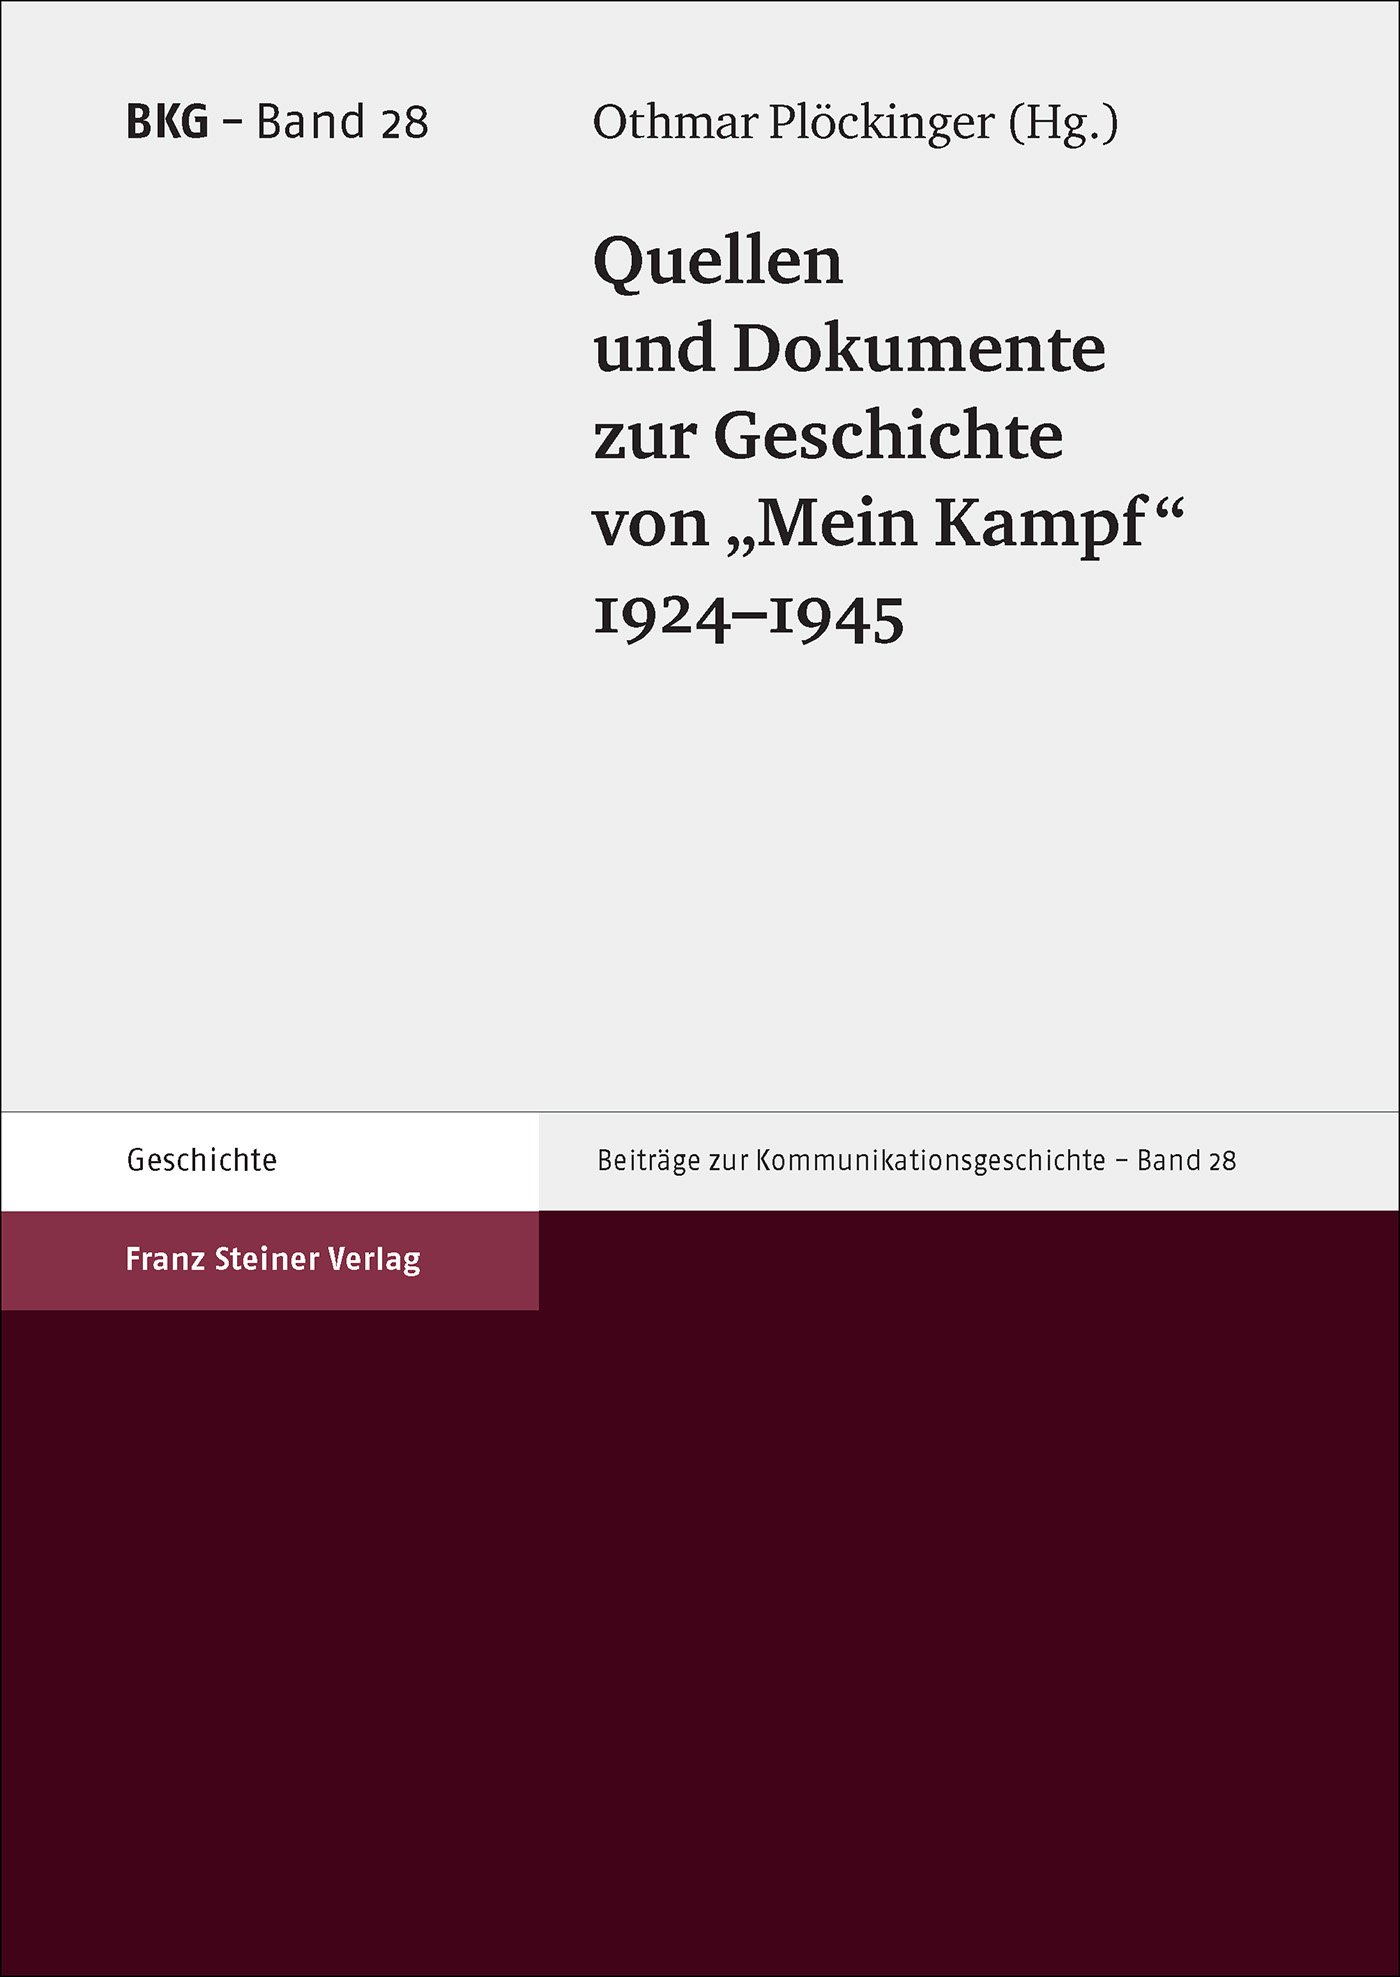 Quellen und Dokumente zur Geschichte von "Mein Kampf", 1924–1945